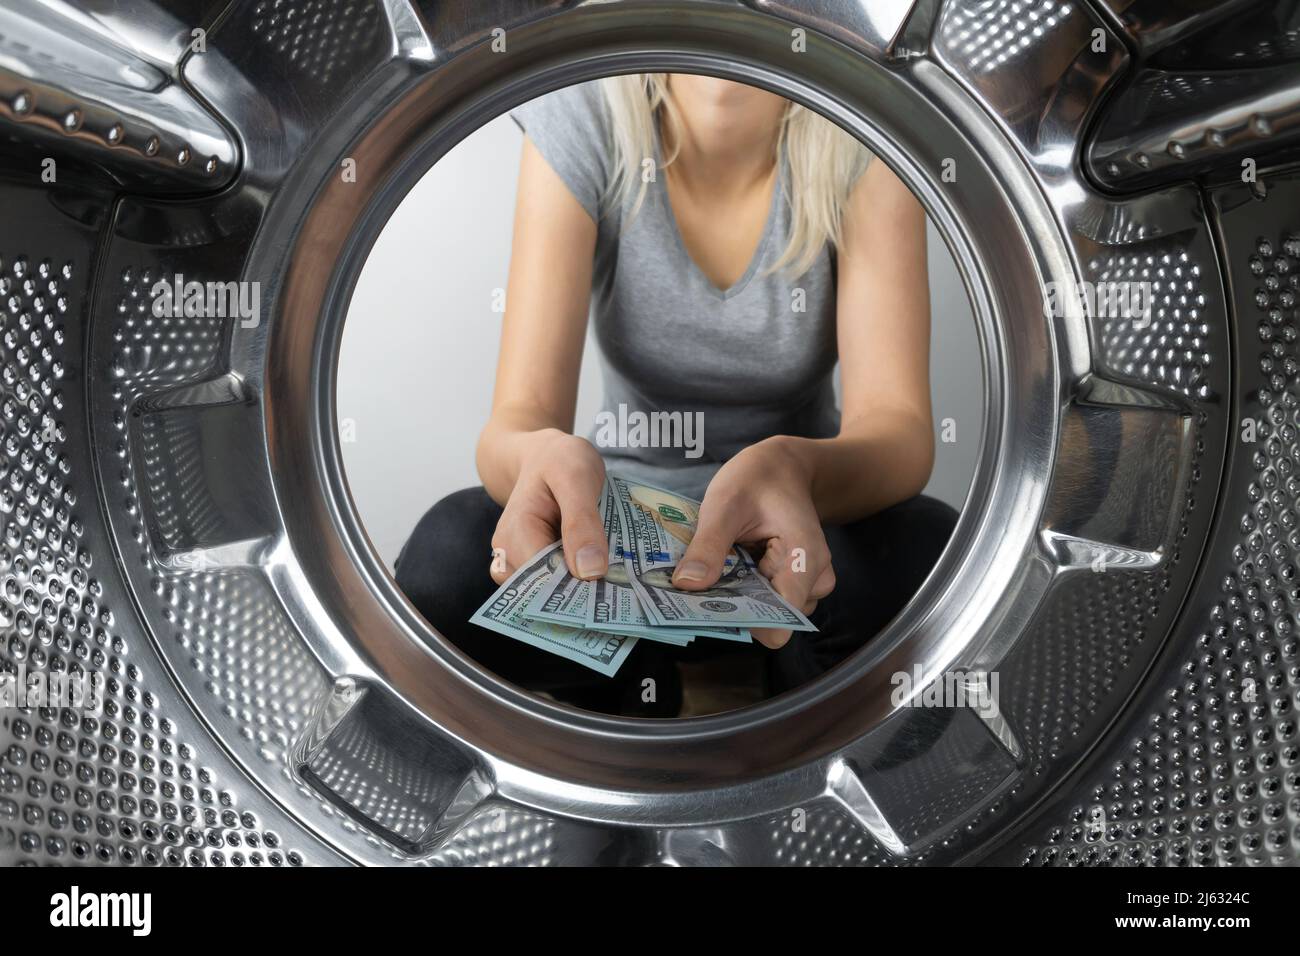 Les mains des femmes tiennent l'argent près de la machine à laver, une photo de l'intérieur du tambour de la machine à laver. Concept de paiement, blanchiment d'argent. Banque D'Images